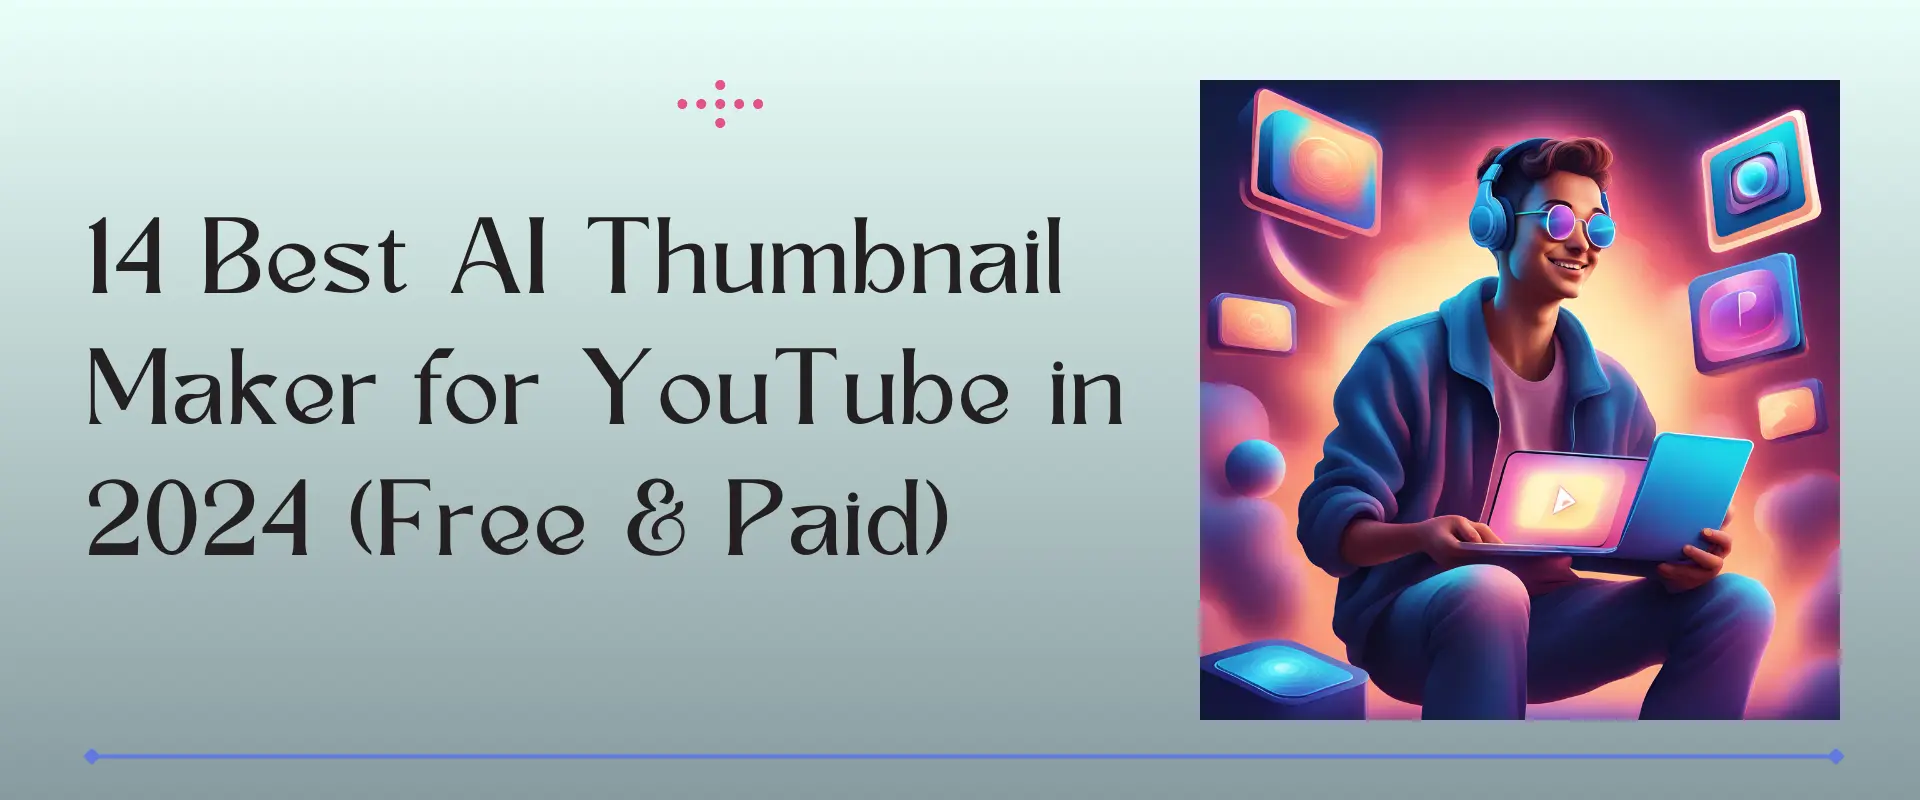 ai thumbnail maker for youtube